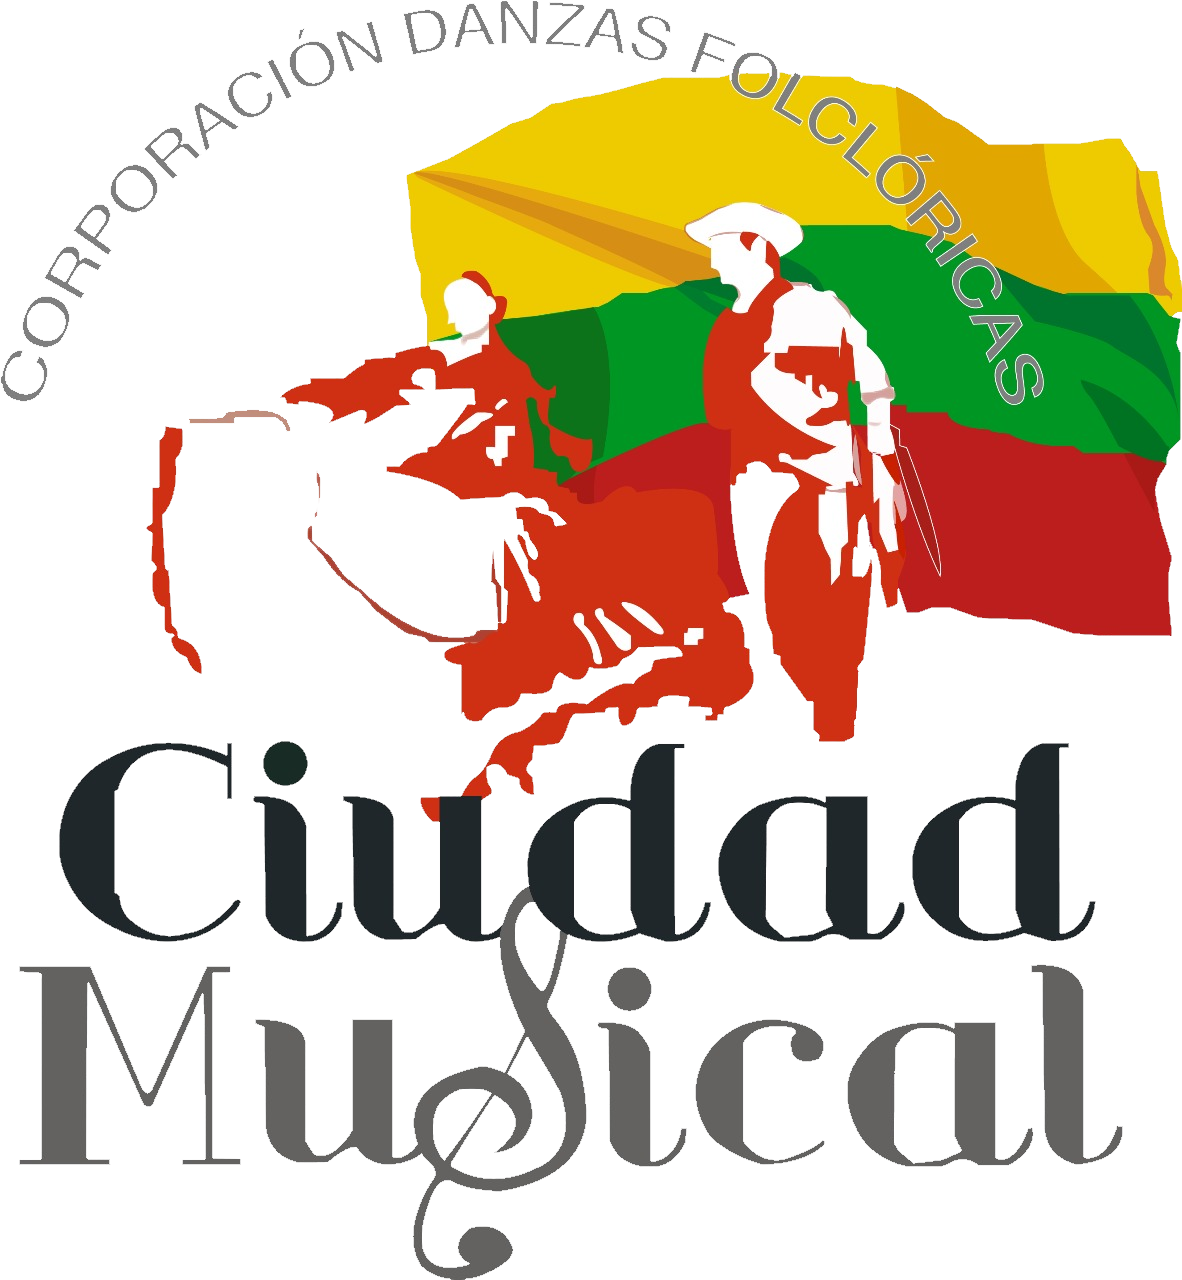 Corporación Danza Ciudad Musical